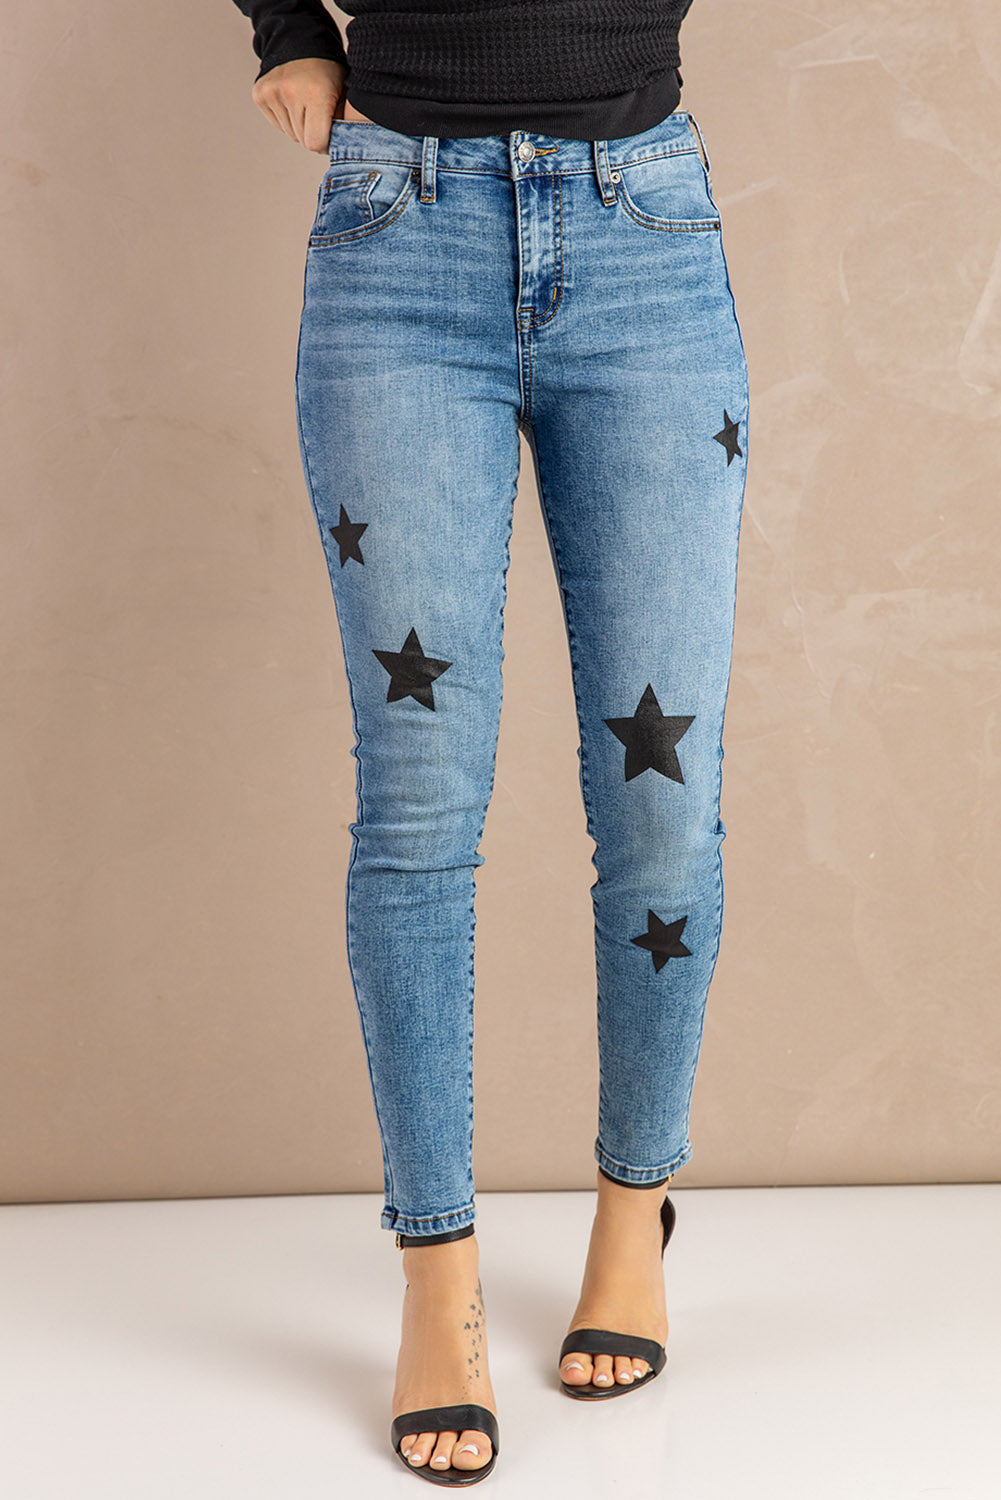 Black Stars Skinny Jeans